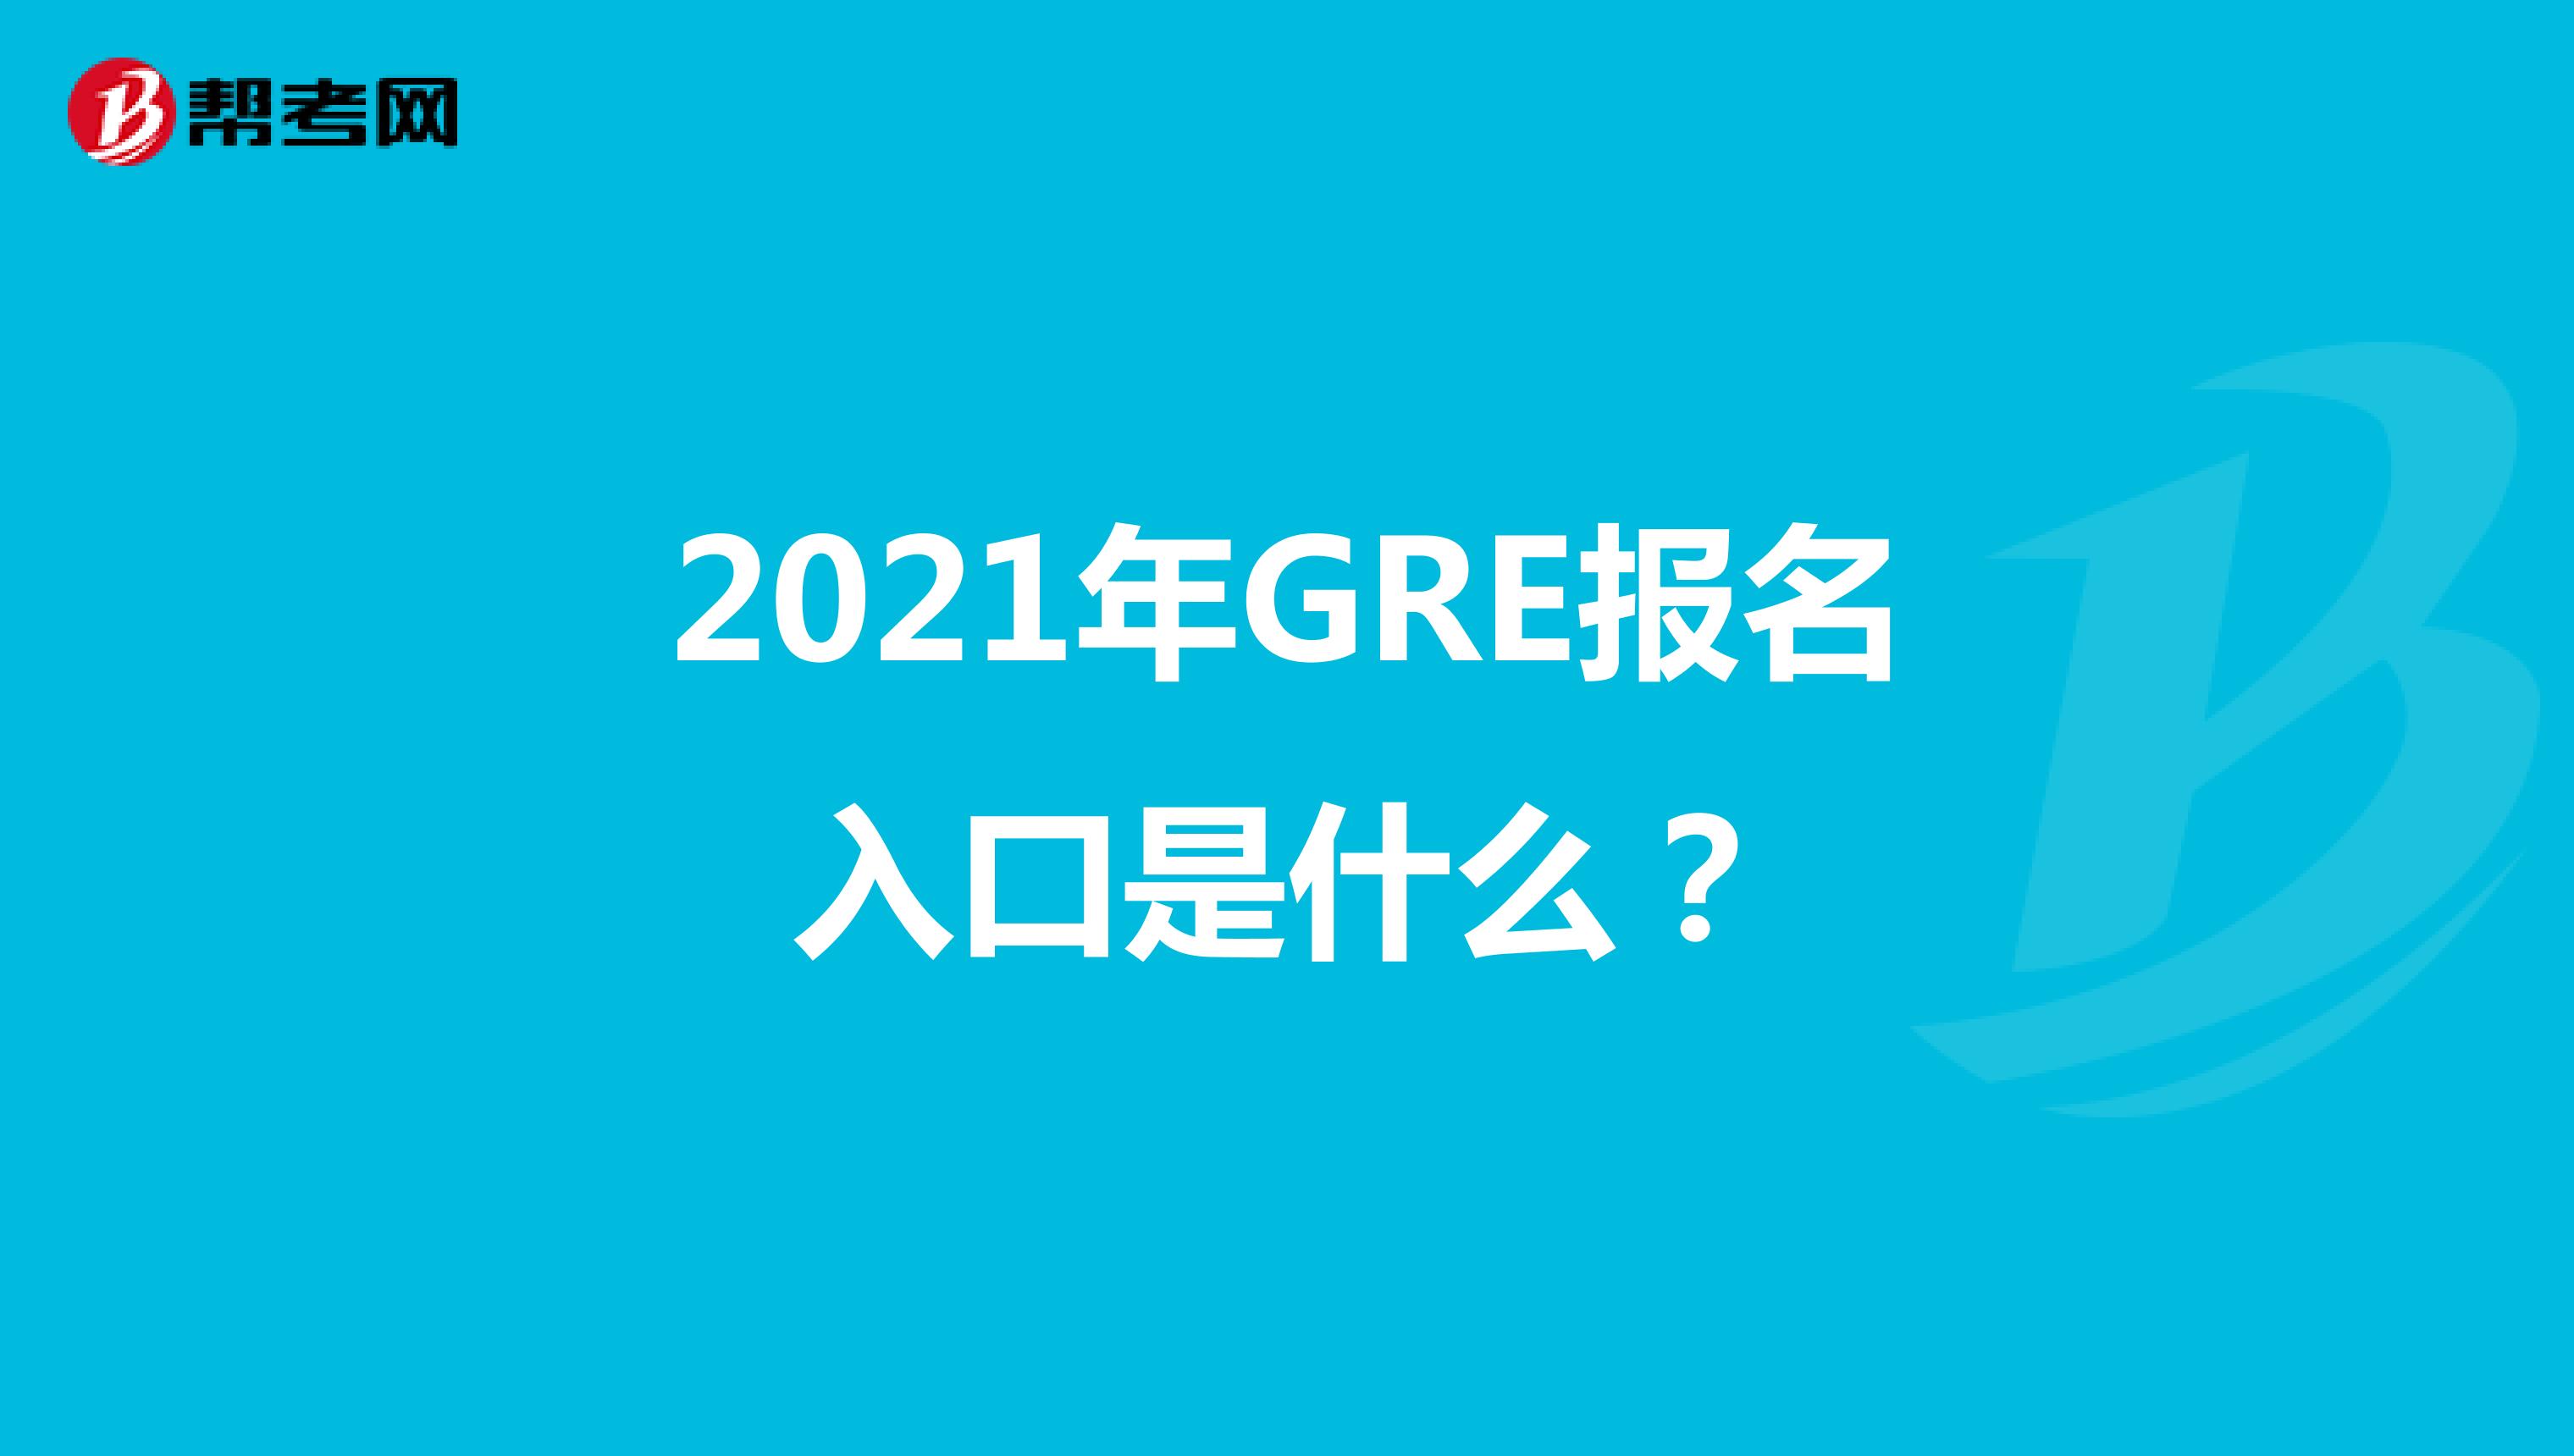 2021年GRE报名入口是什么？